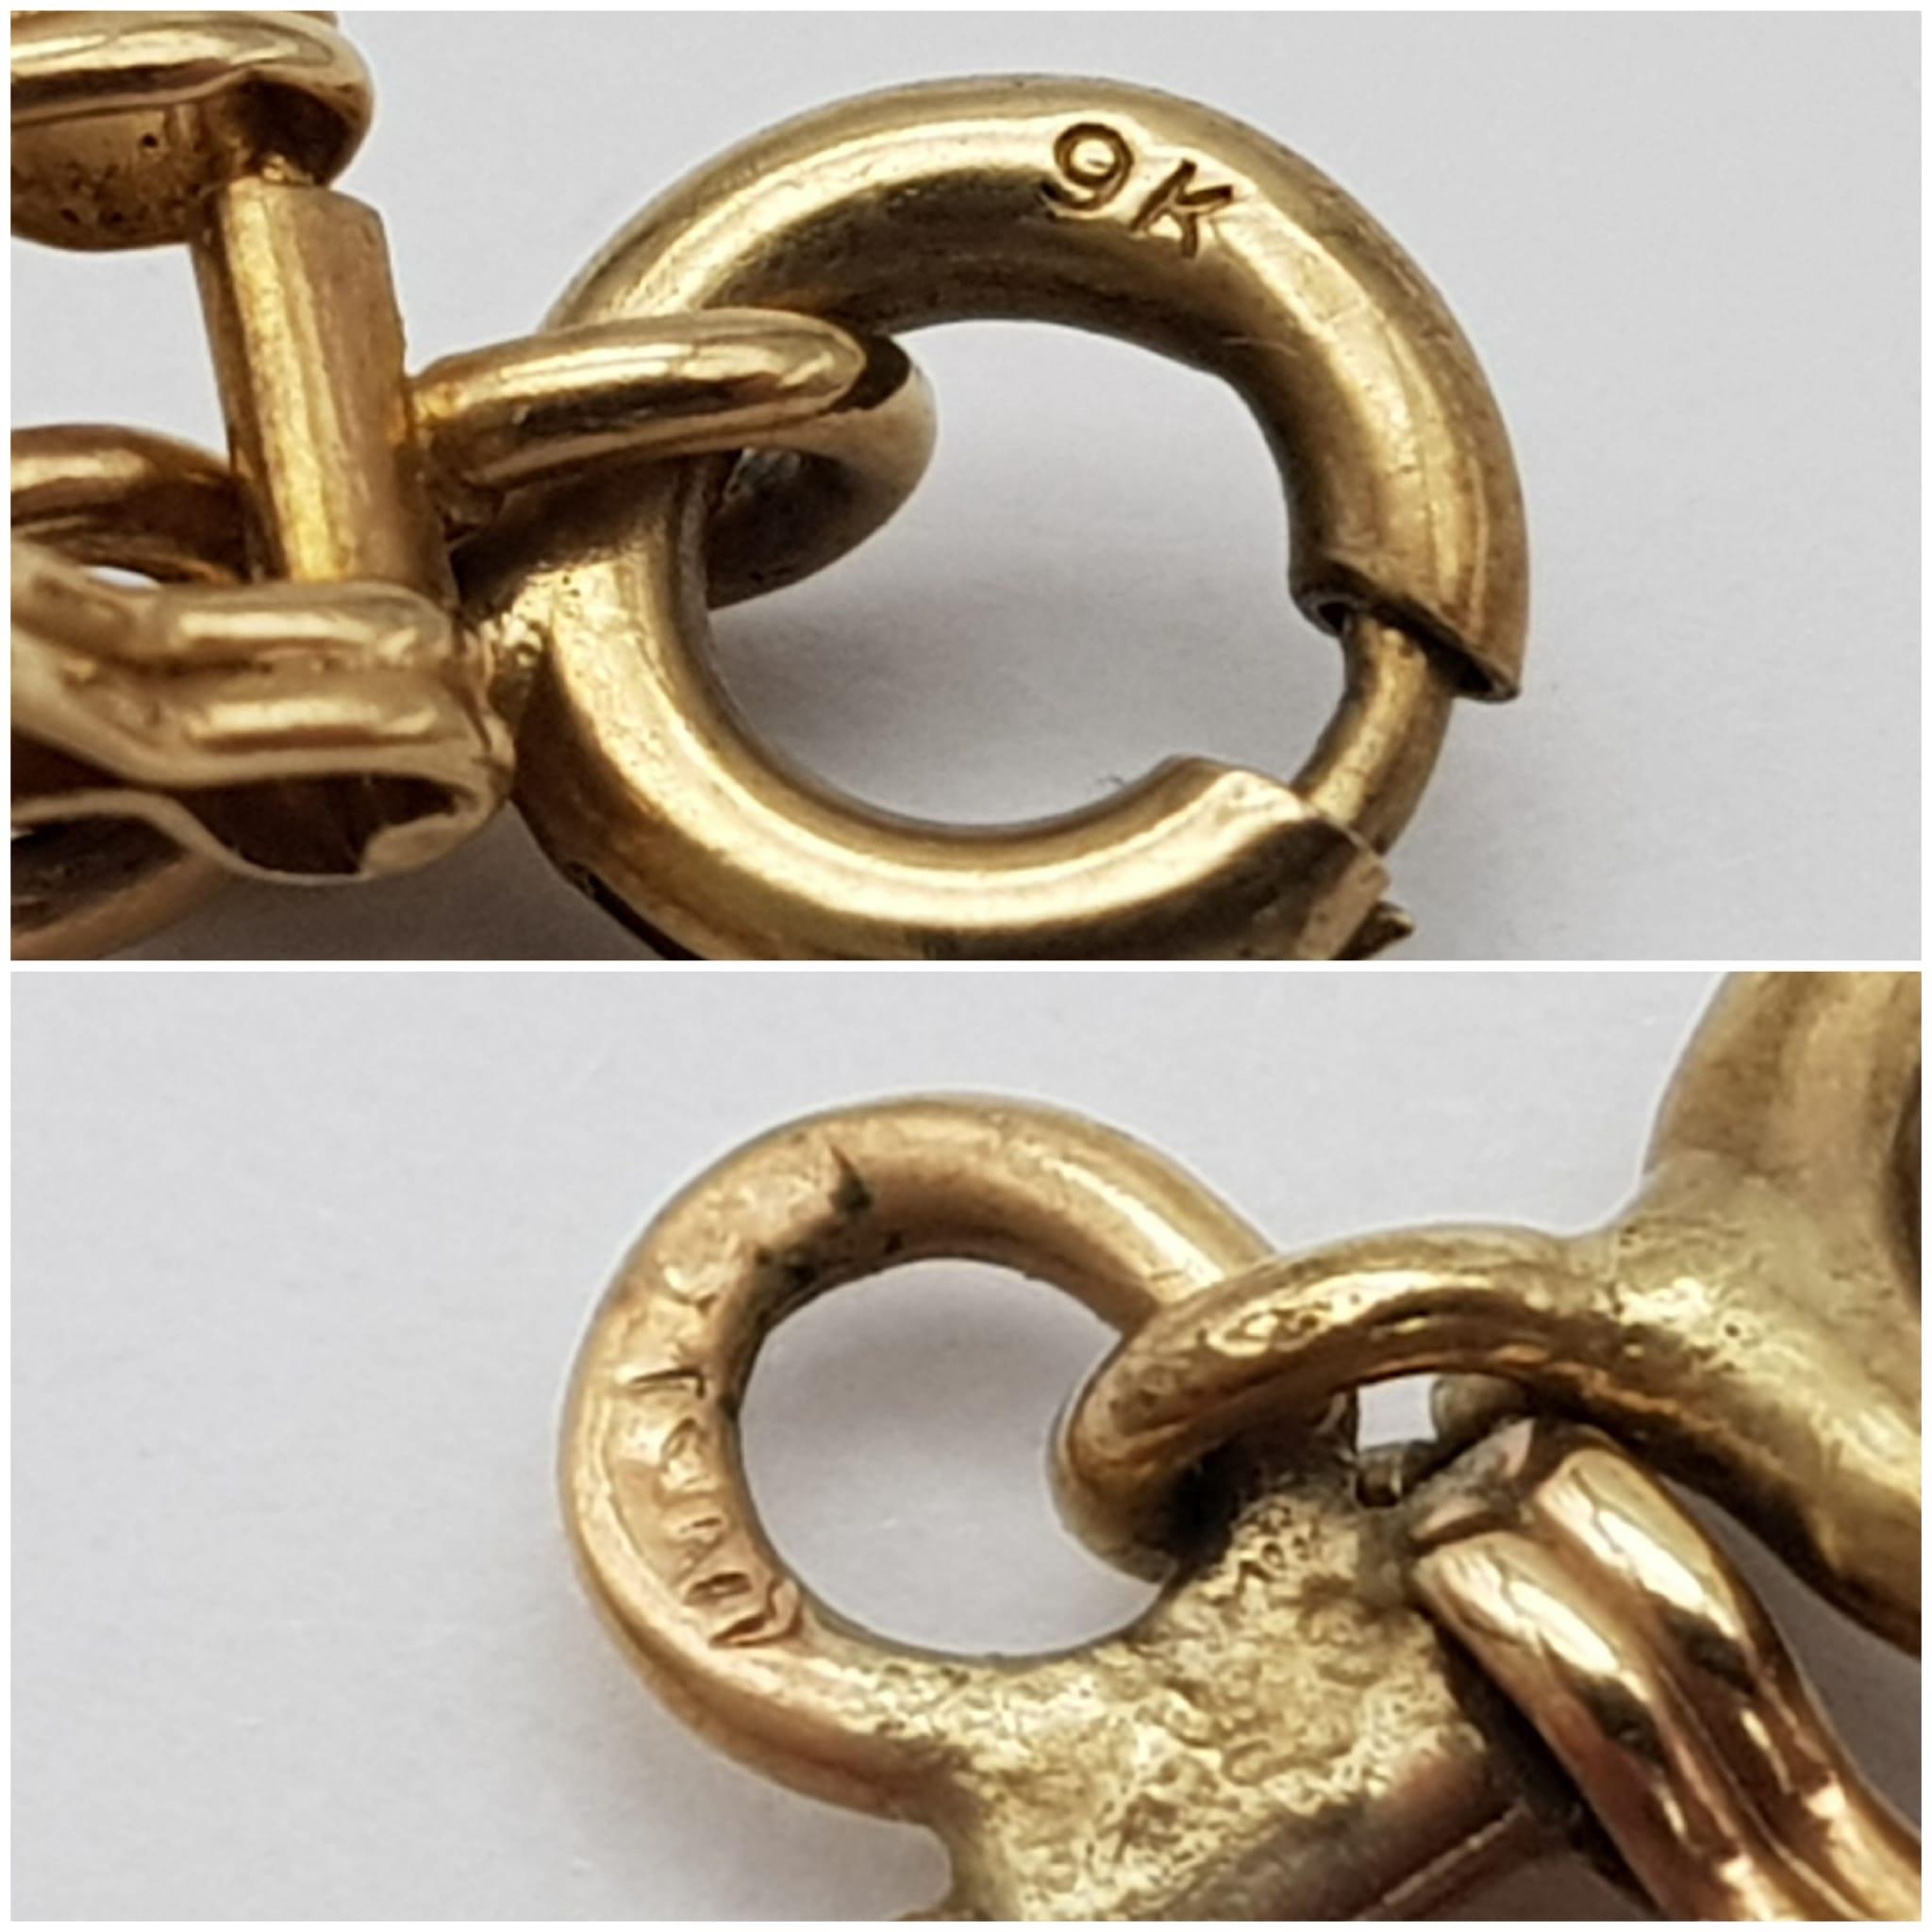 A 16cms SQUARE LINK BRACELET IN 9K GOLD . 5.8gms - Image 4 of 4